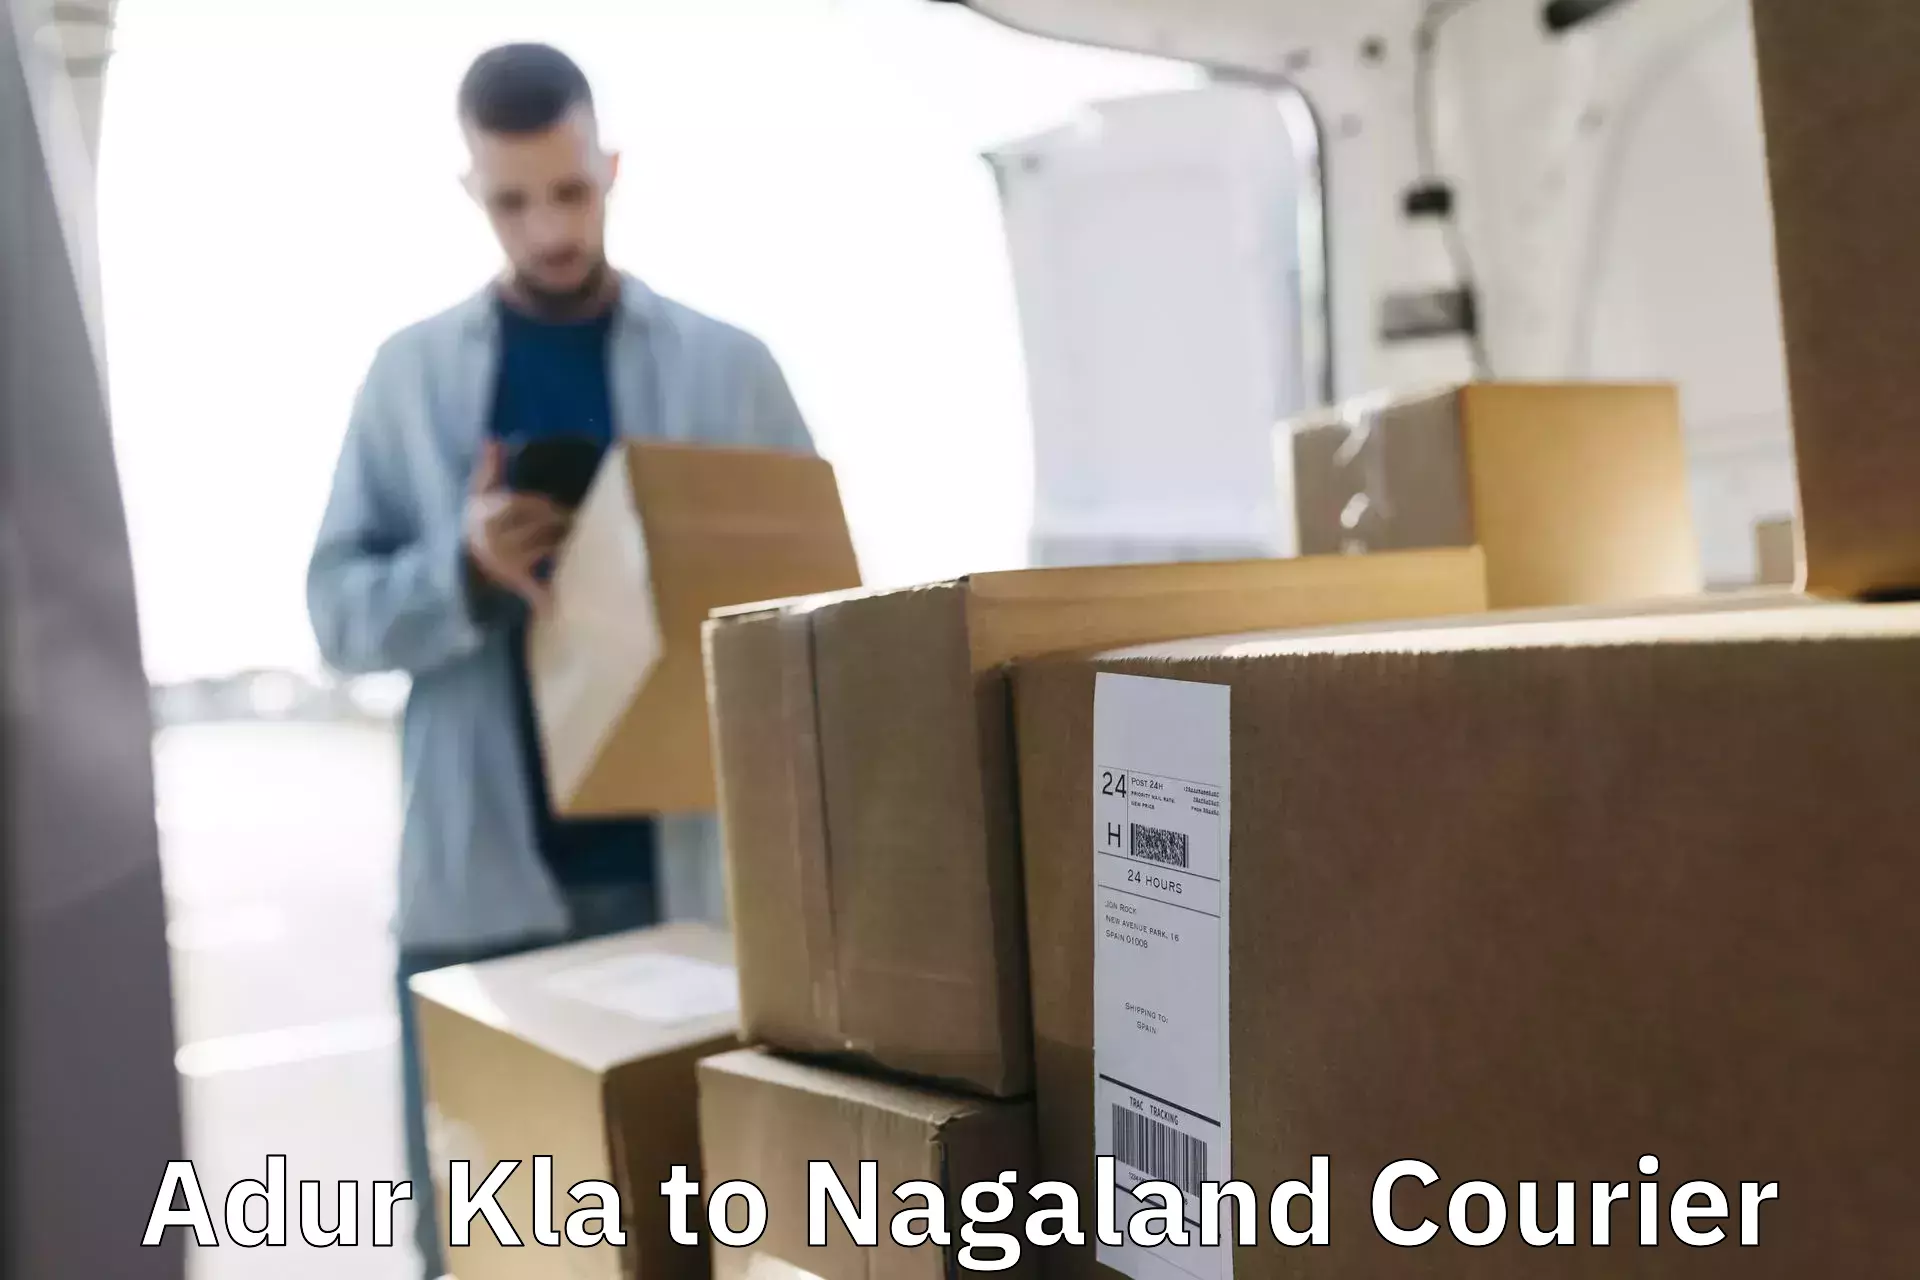 Advanced logistics management Adur Kla to Nagaland